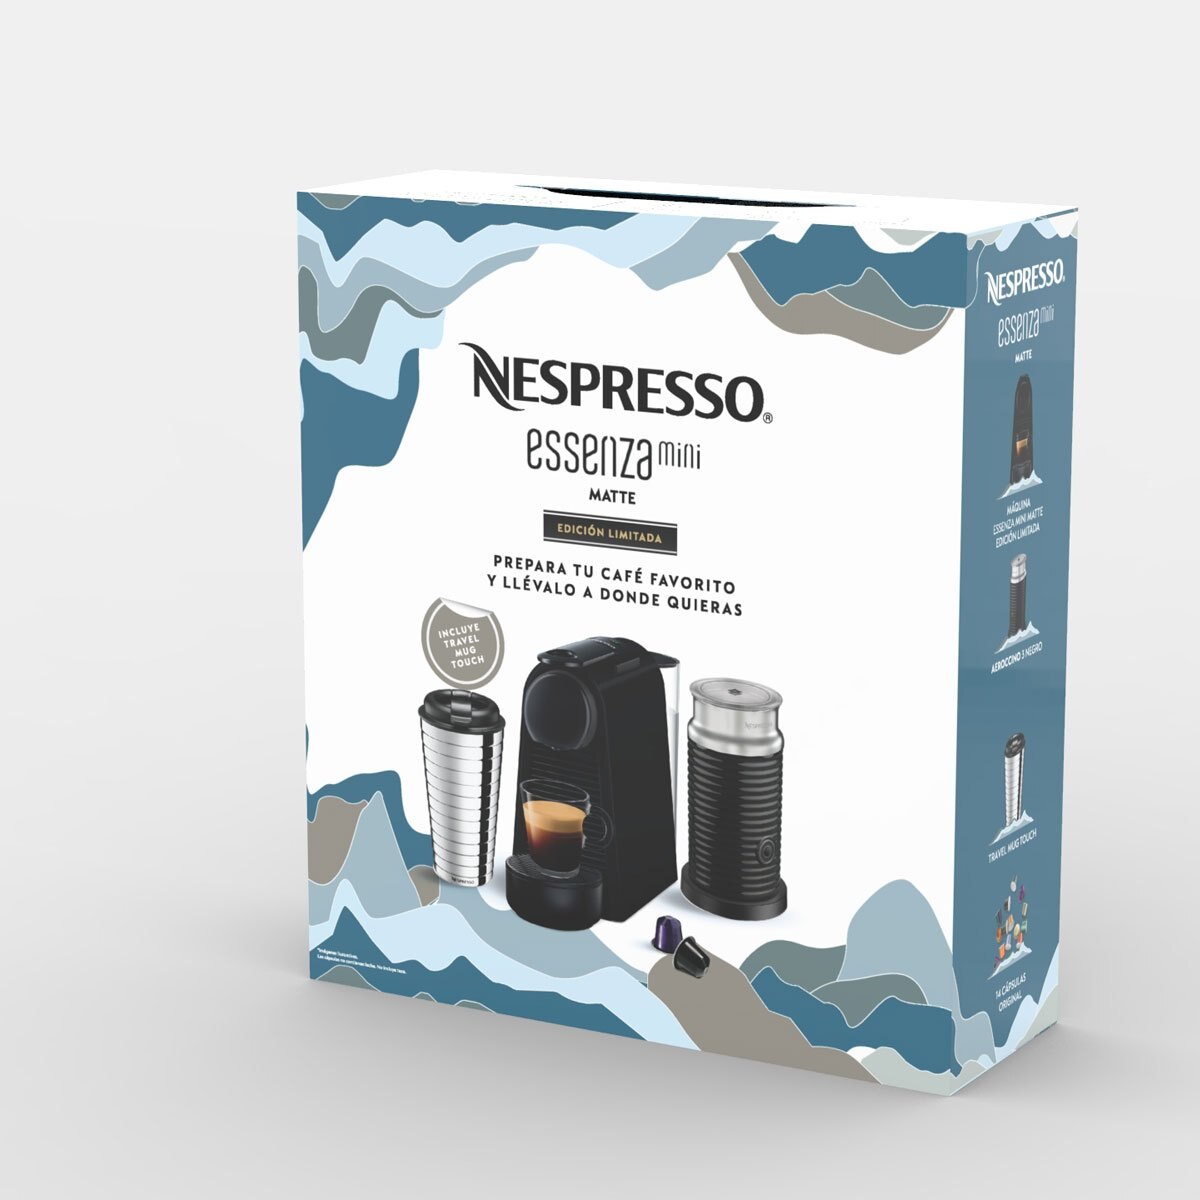 Essenza Matte + Aeroccino + Termo Nespresso